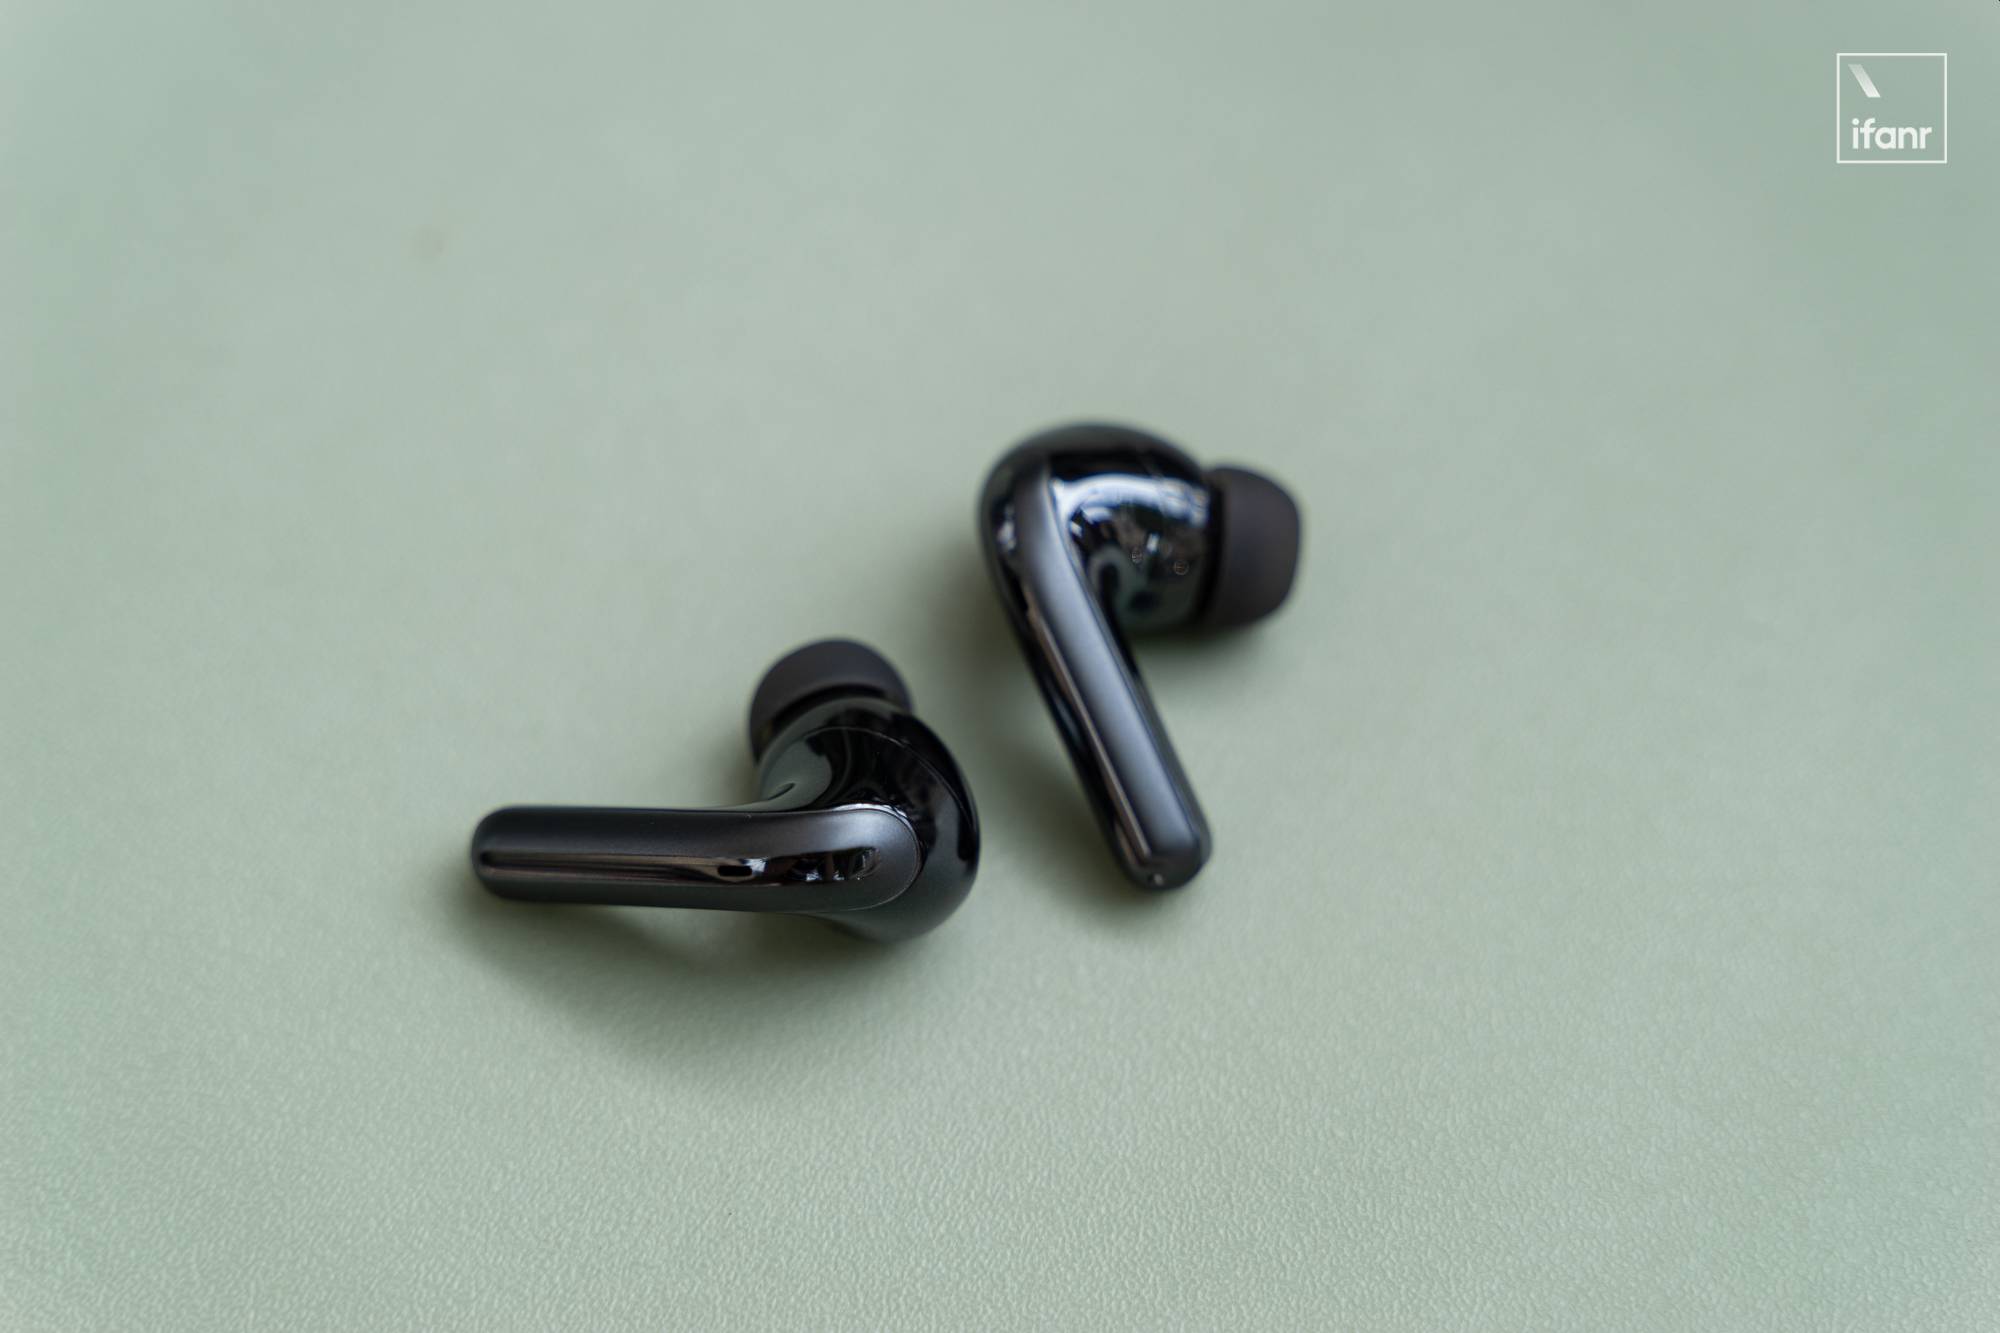 DSC06861 - Xiaomi Noise Cancelling Headphones Pro prima esperienza: entro mille yuan, eccezionale riduzione del rumore, buona qualità del suono